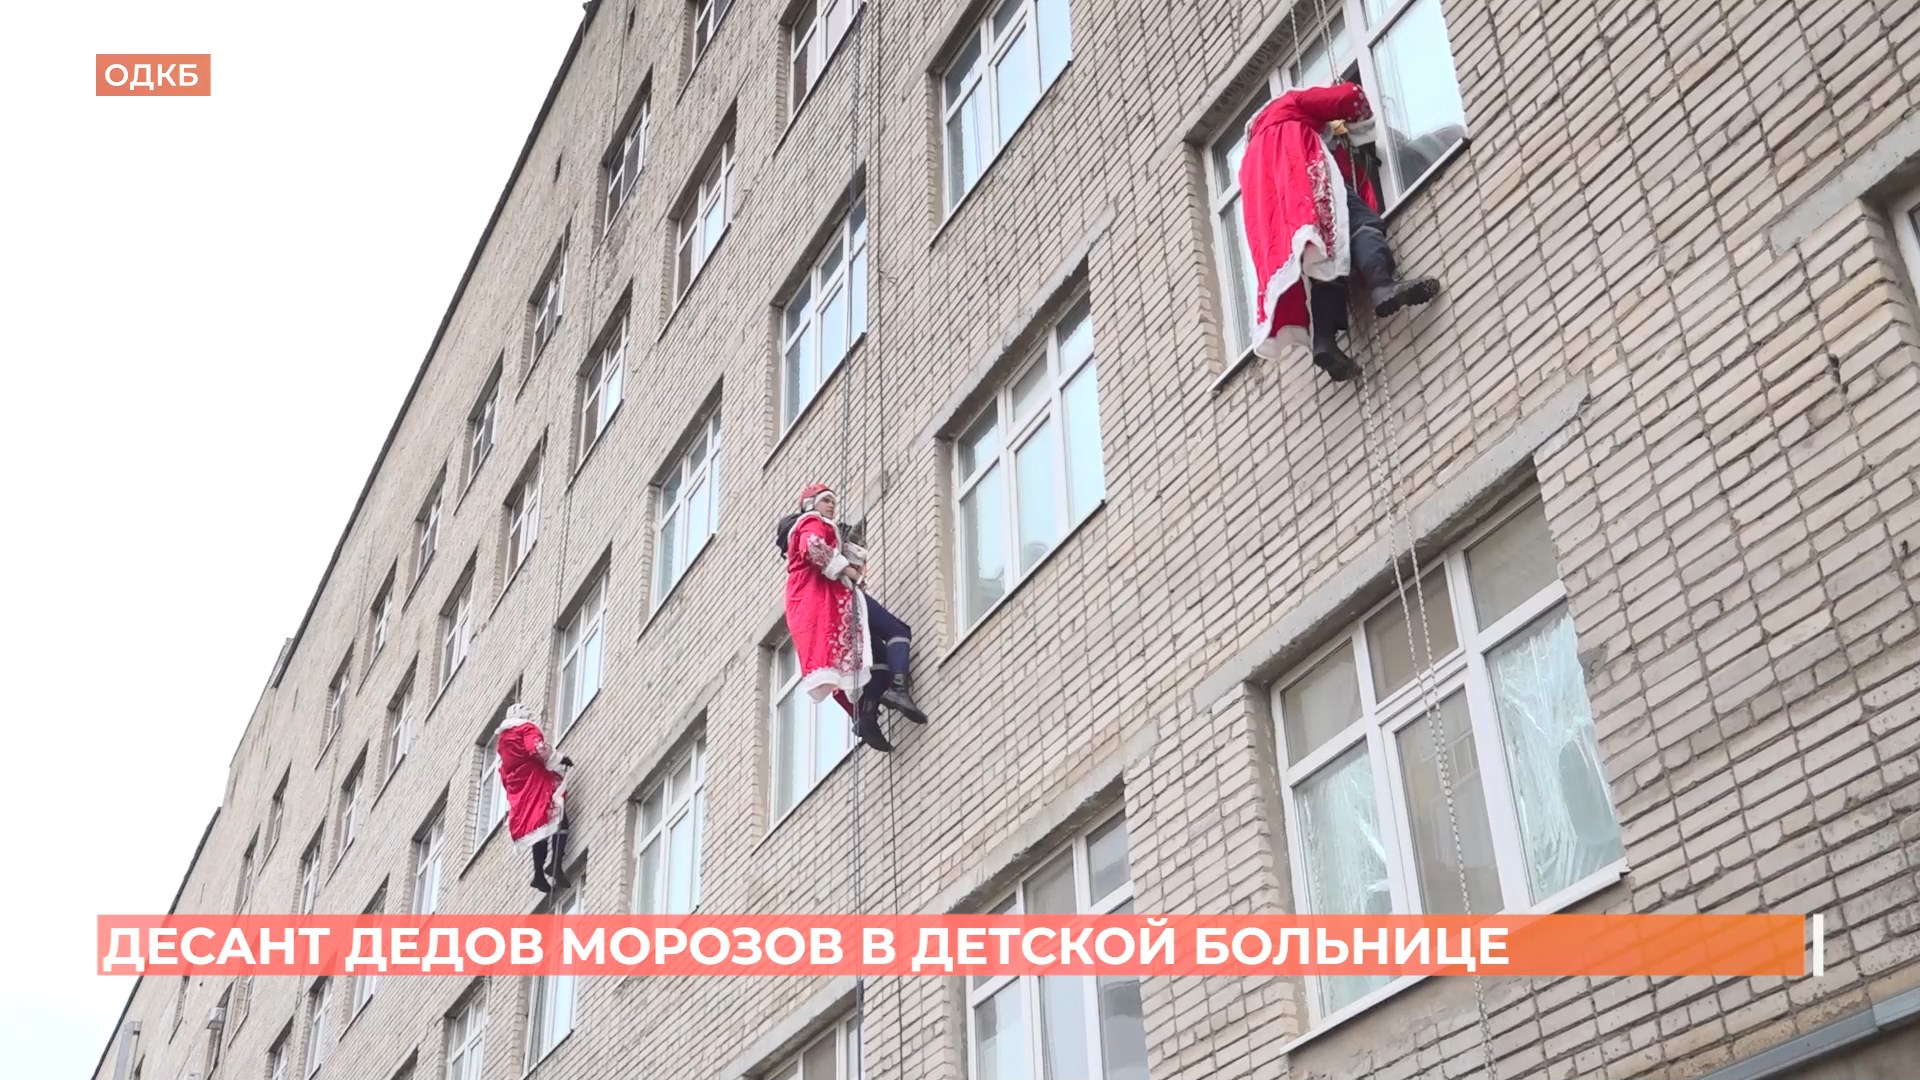 Десант Дедов Морозов высадился сегодня на крыше детской областной клинической больницы